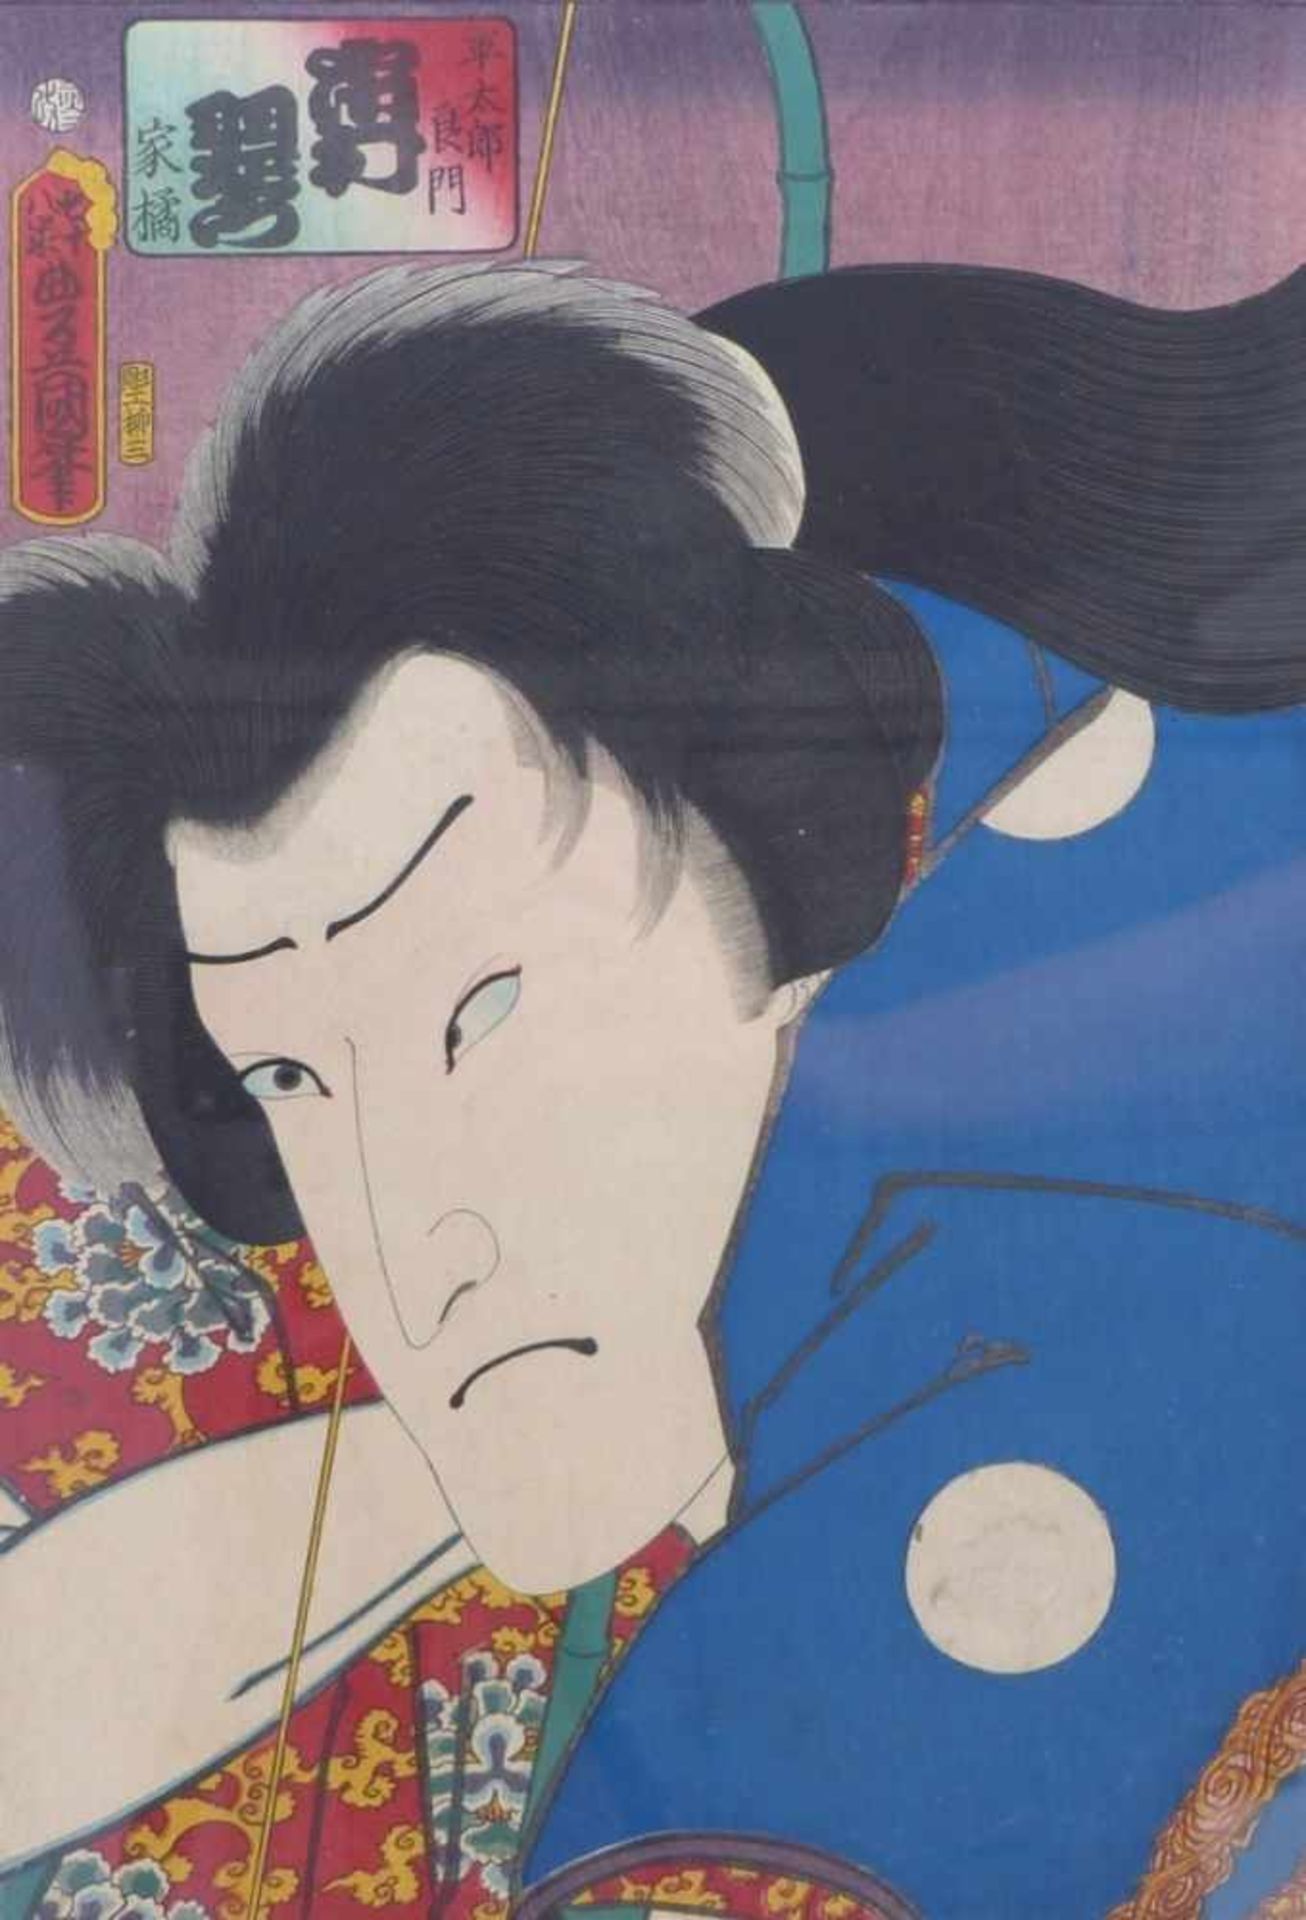 Utagawa Kunisada (Toyokuni III.)Schauspielerportrait aus der Serie "Actor Portraits Past and Present